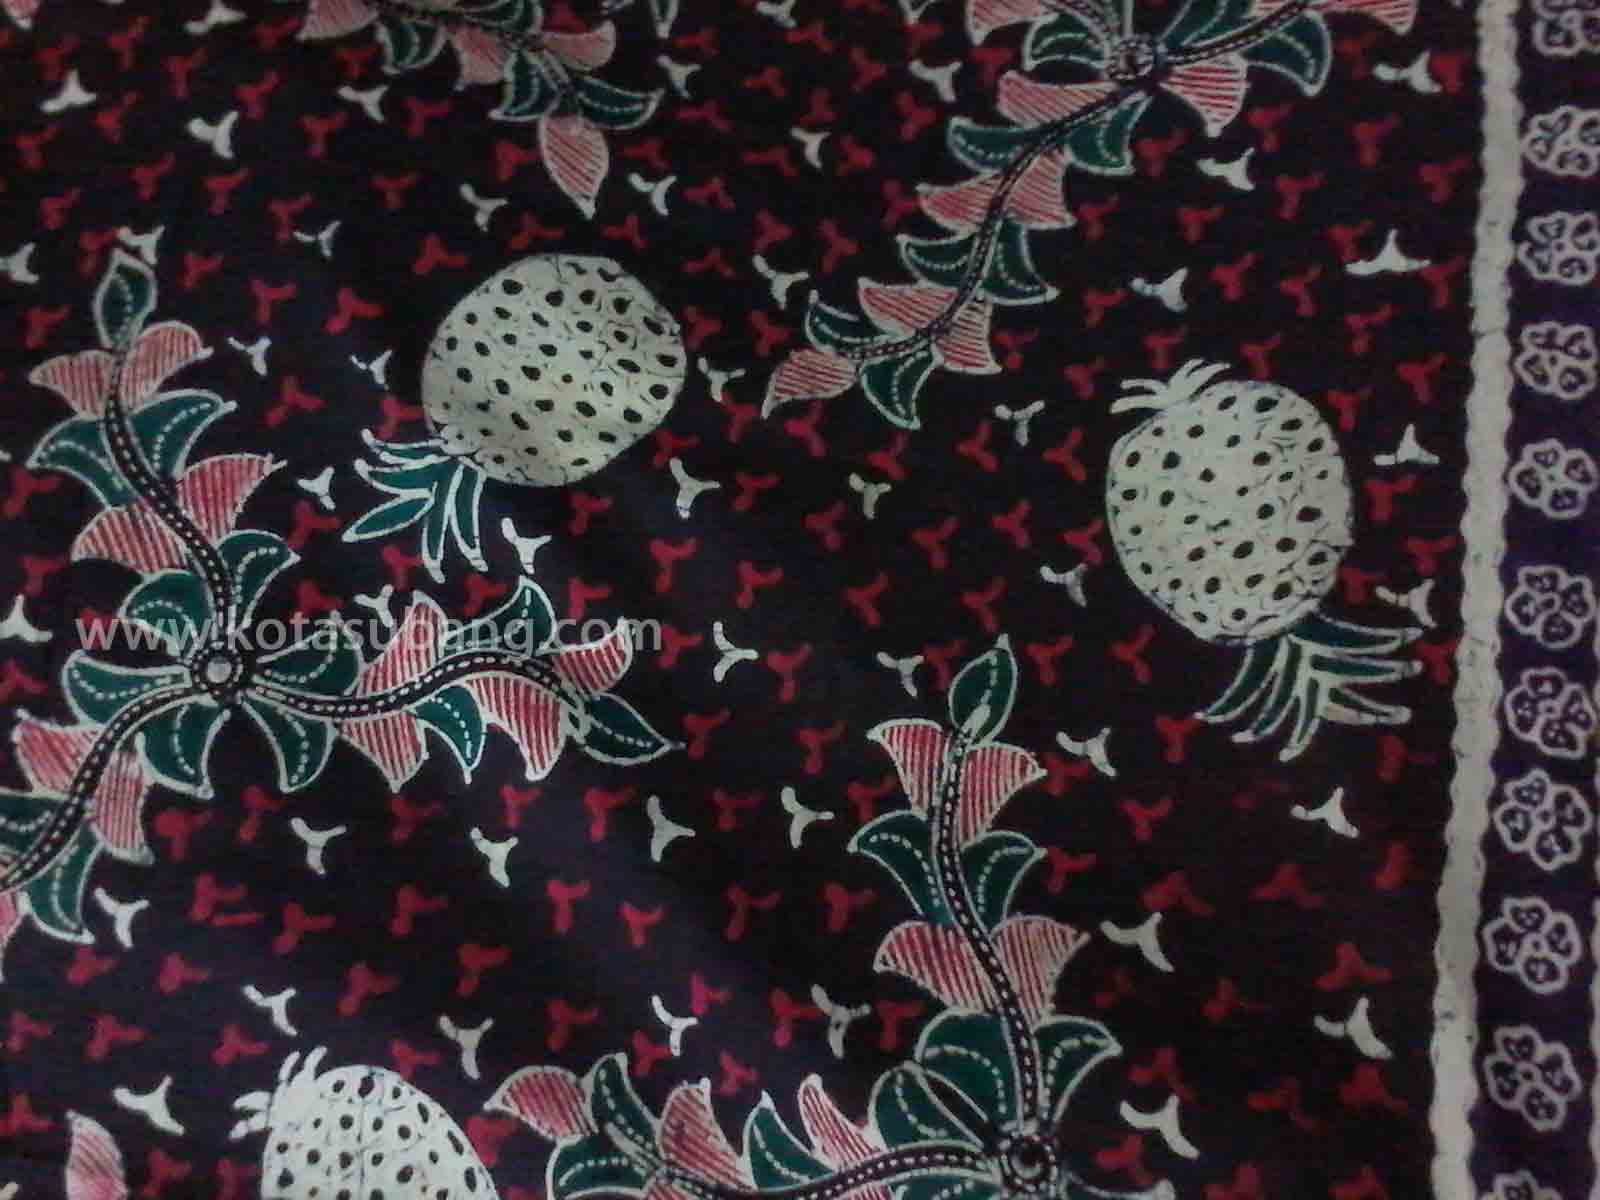 Mengenal Batik Subang Kotasubangcom